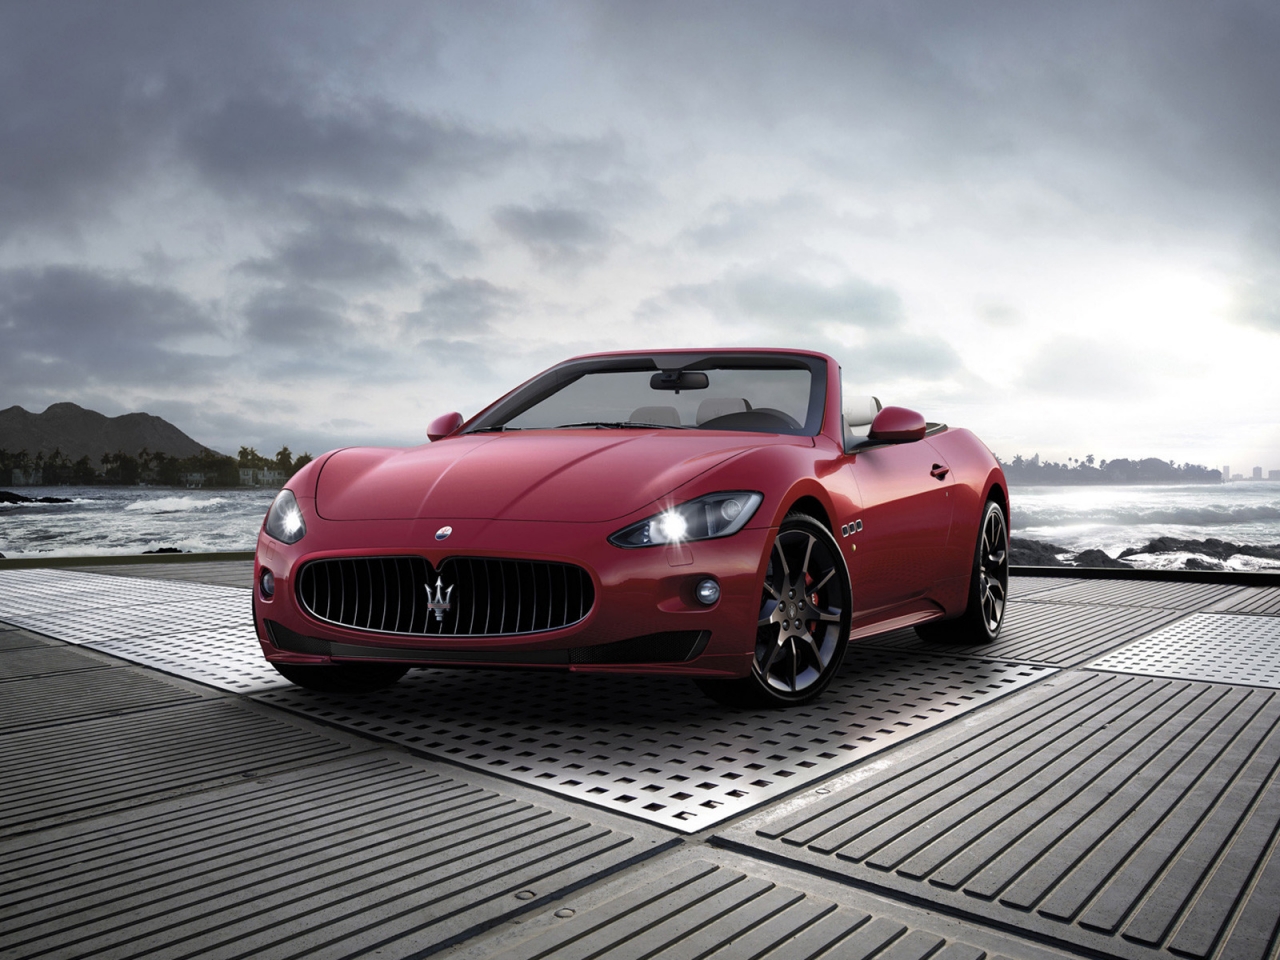 2011 Maserati GranCabrio Sport for 1280 x 960 resolution